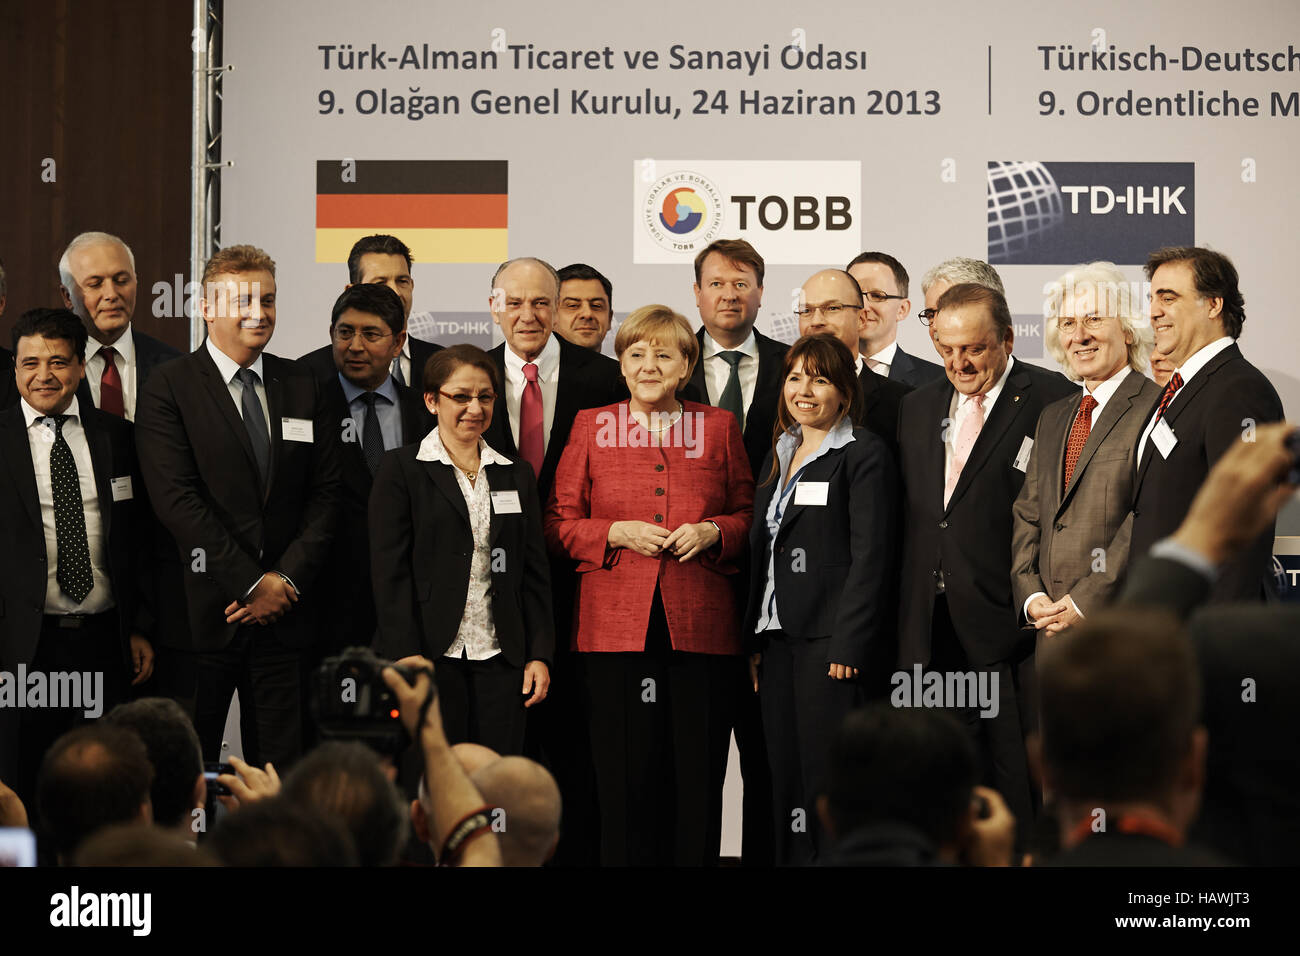 Merkel discorso presso il TD-IHK Assemblaggio Foto Stock